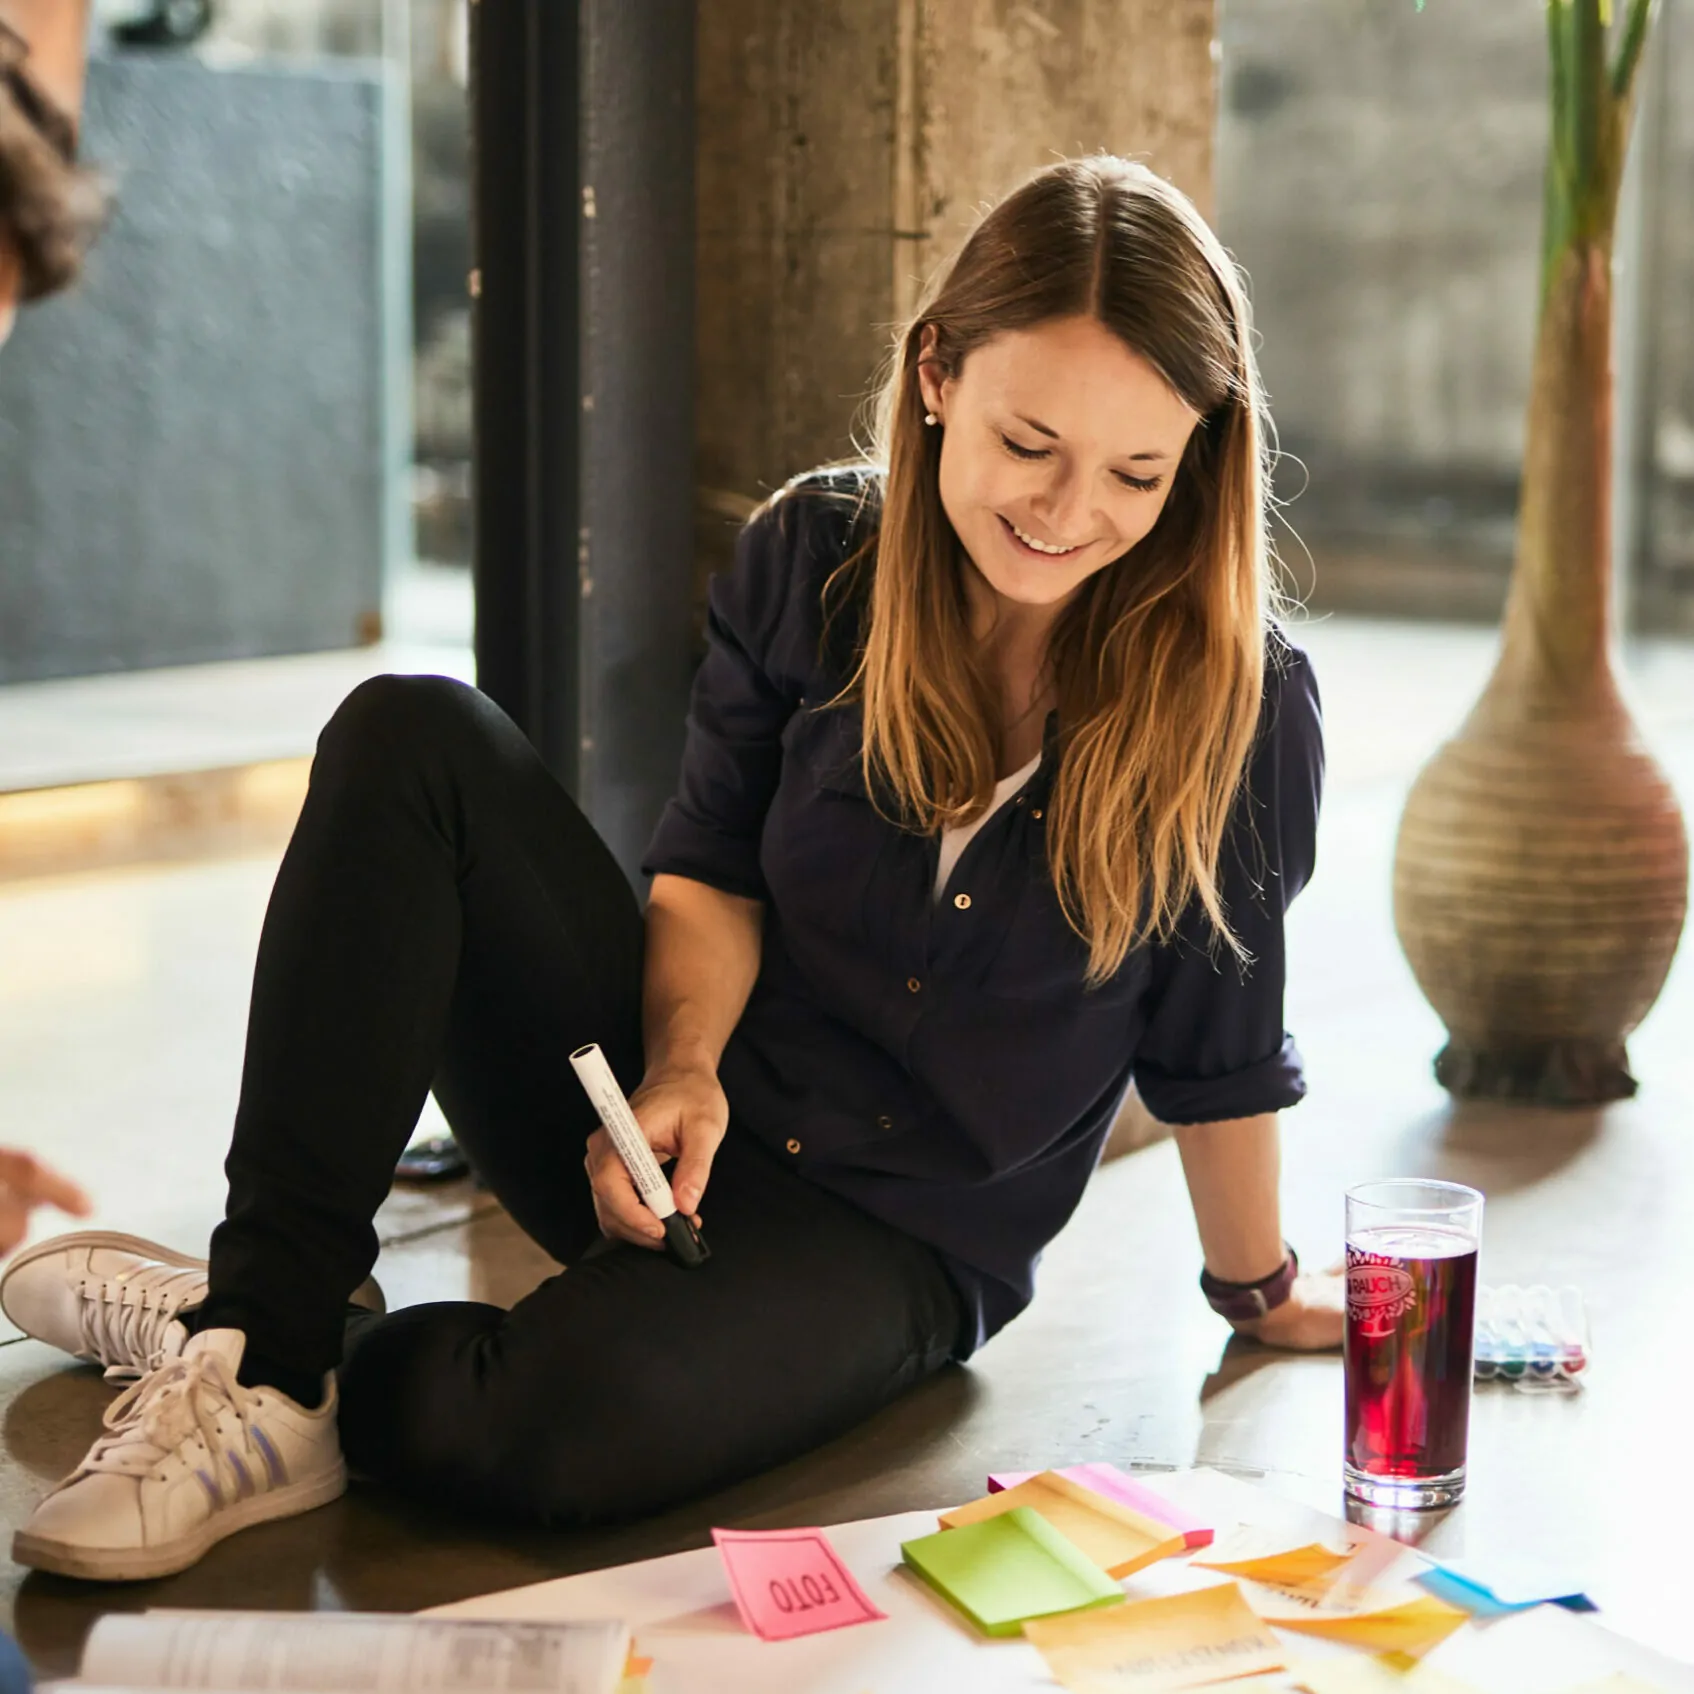 Foto von einer jungen Frau mit einem Stift in der Hand, die am Boden sitzt und an einem Plakat für ein Projekt arbeitet.